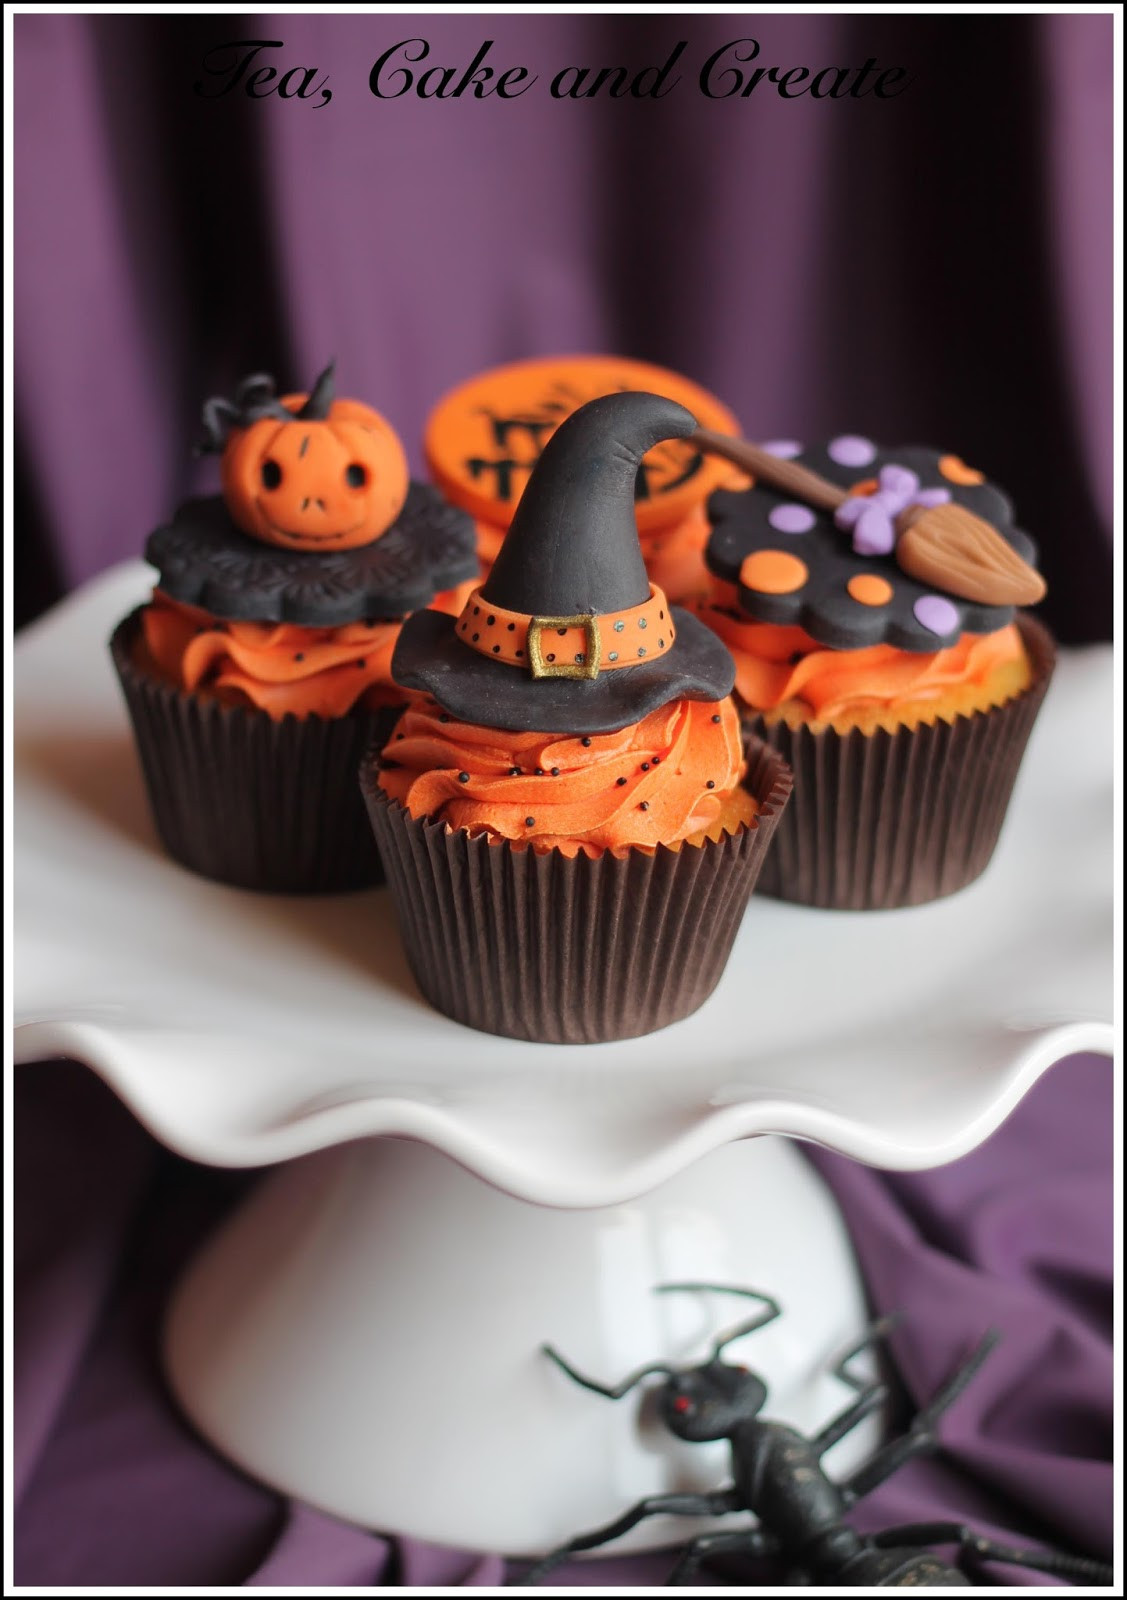 Halloween Cookies And Cupcakes
 Tea Cake & Create Halloween Cookies and Cupcakes